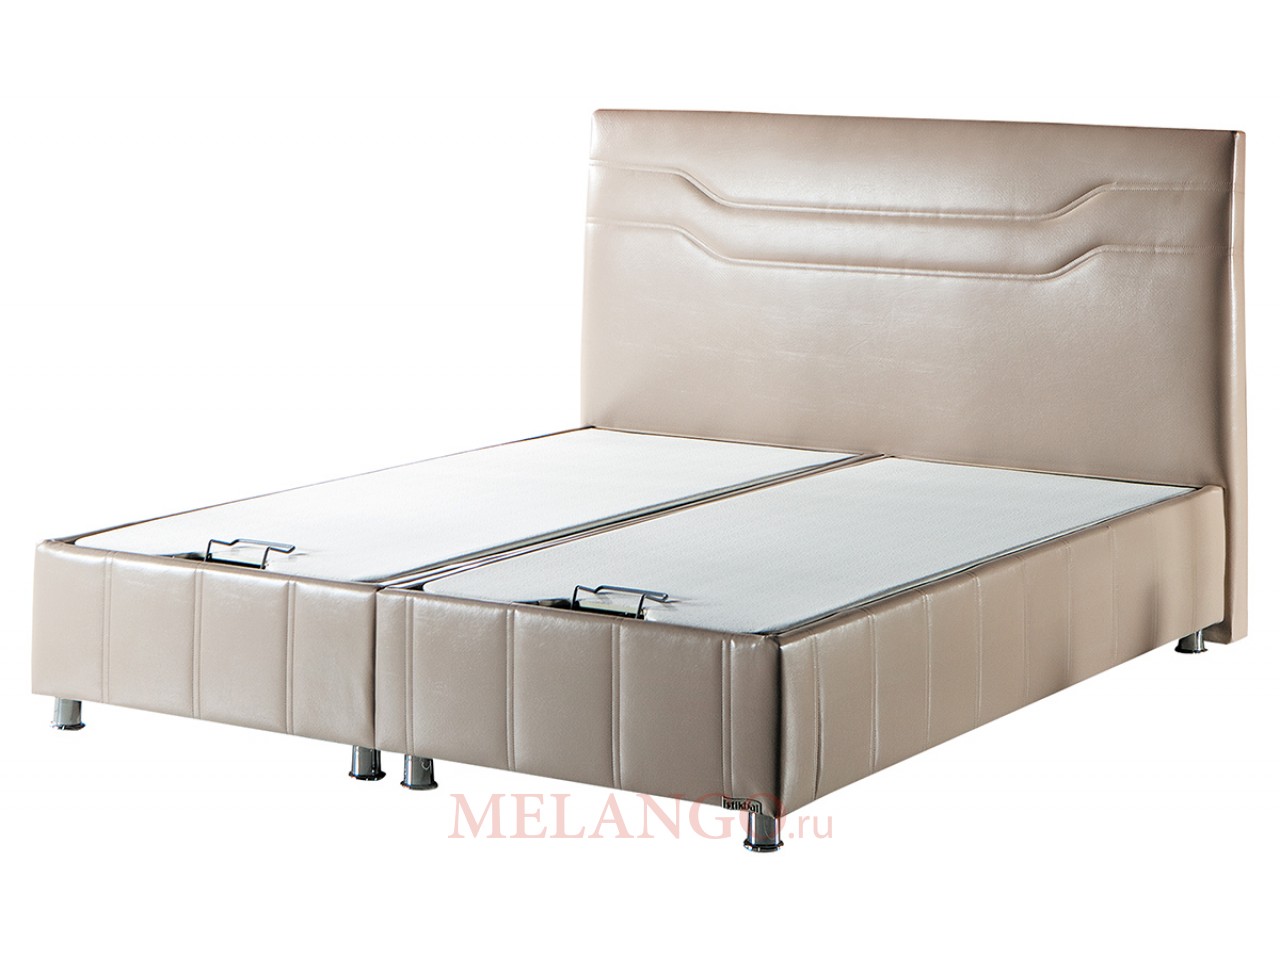 Двуспальная кровать с подъемным механизмом и мягким изголовьем Ферро FERRO Распродажа